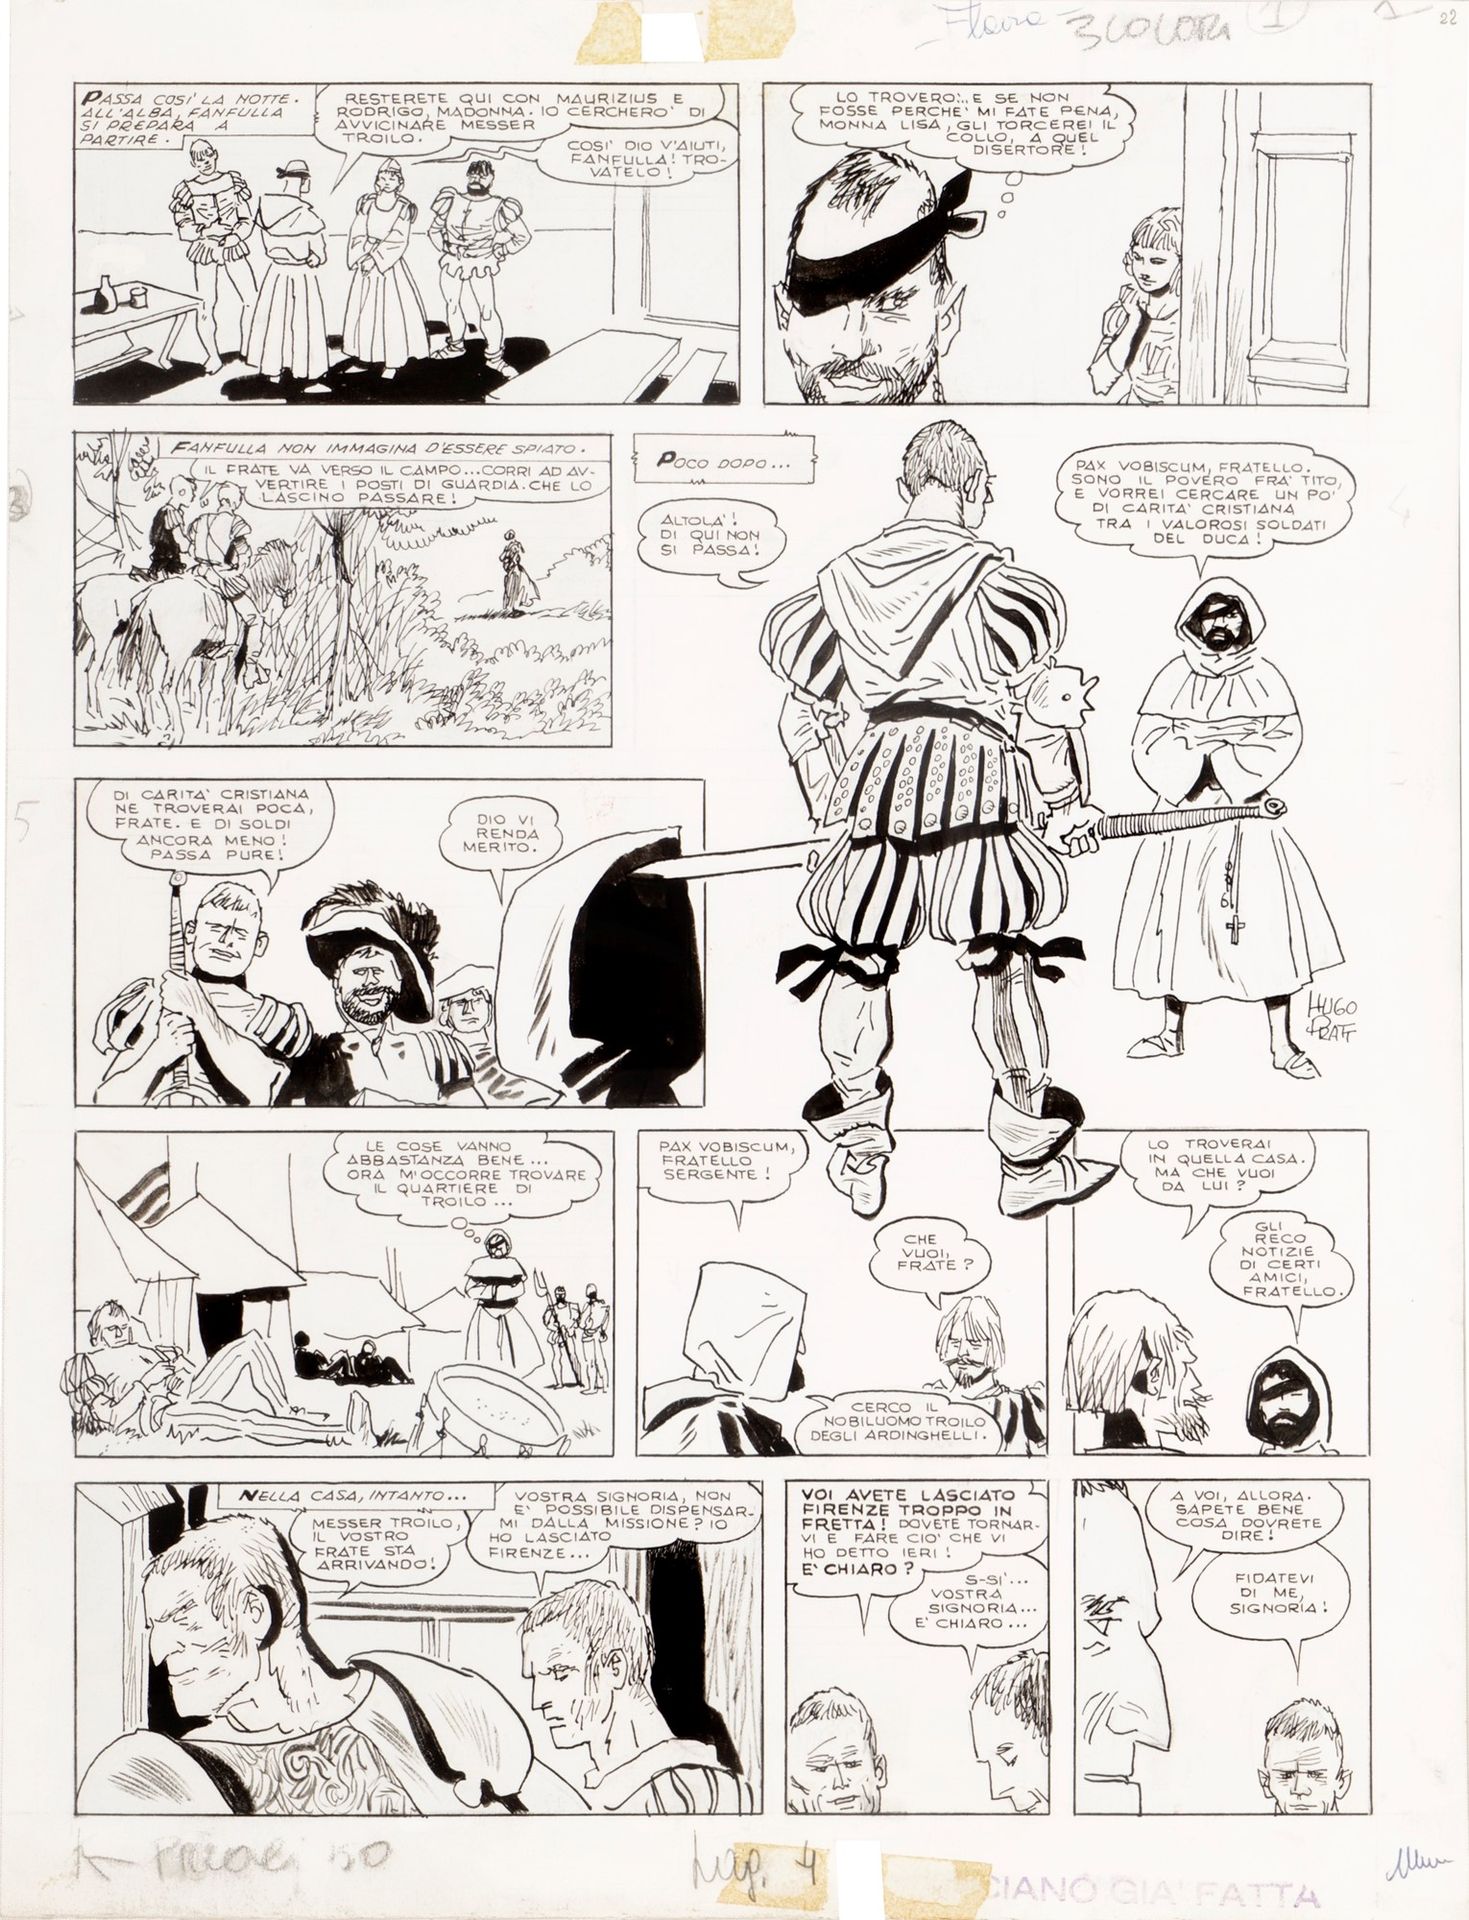 HUGO PRATT Le avventure di Fanfulla, 1967

Bleistift und Tinte auf dünnem Karton&hellip;